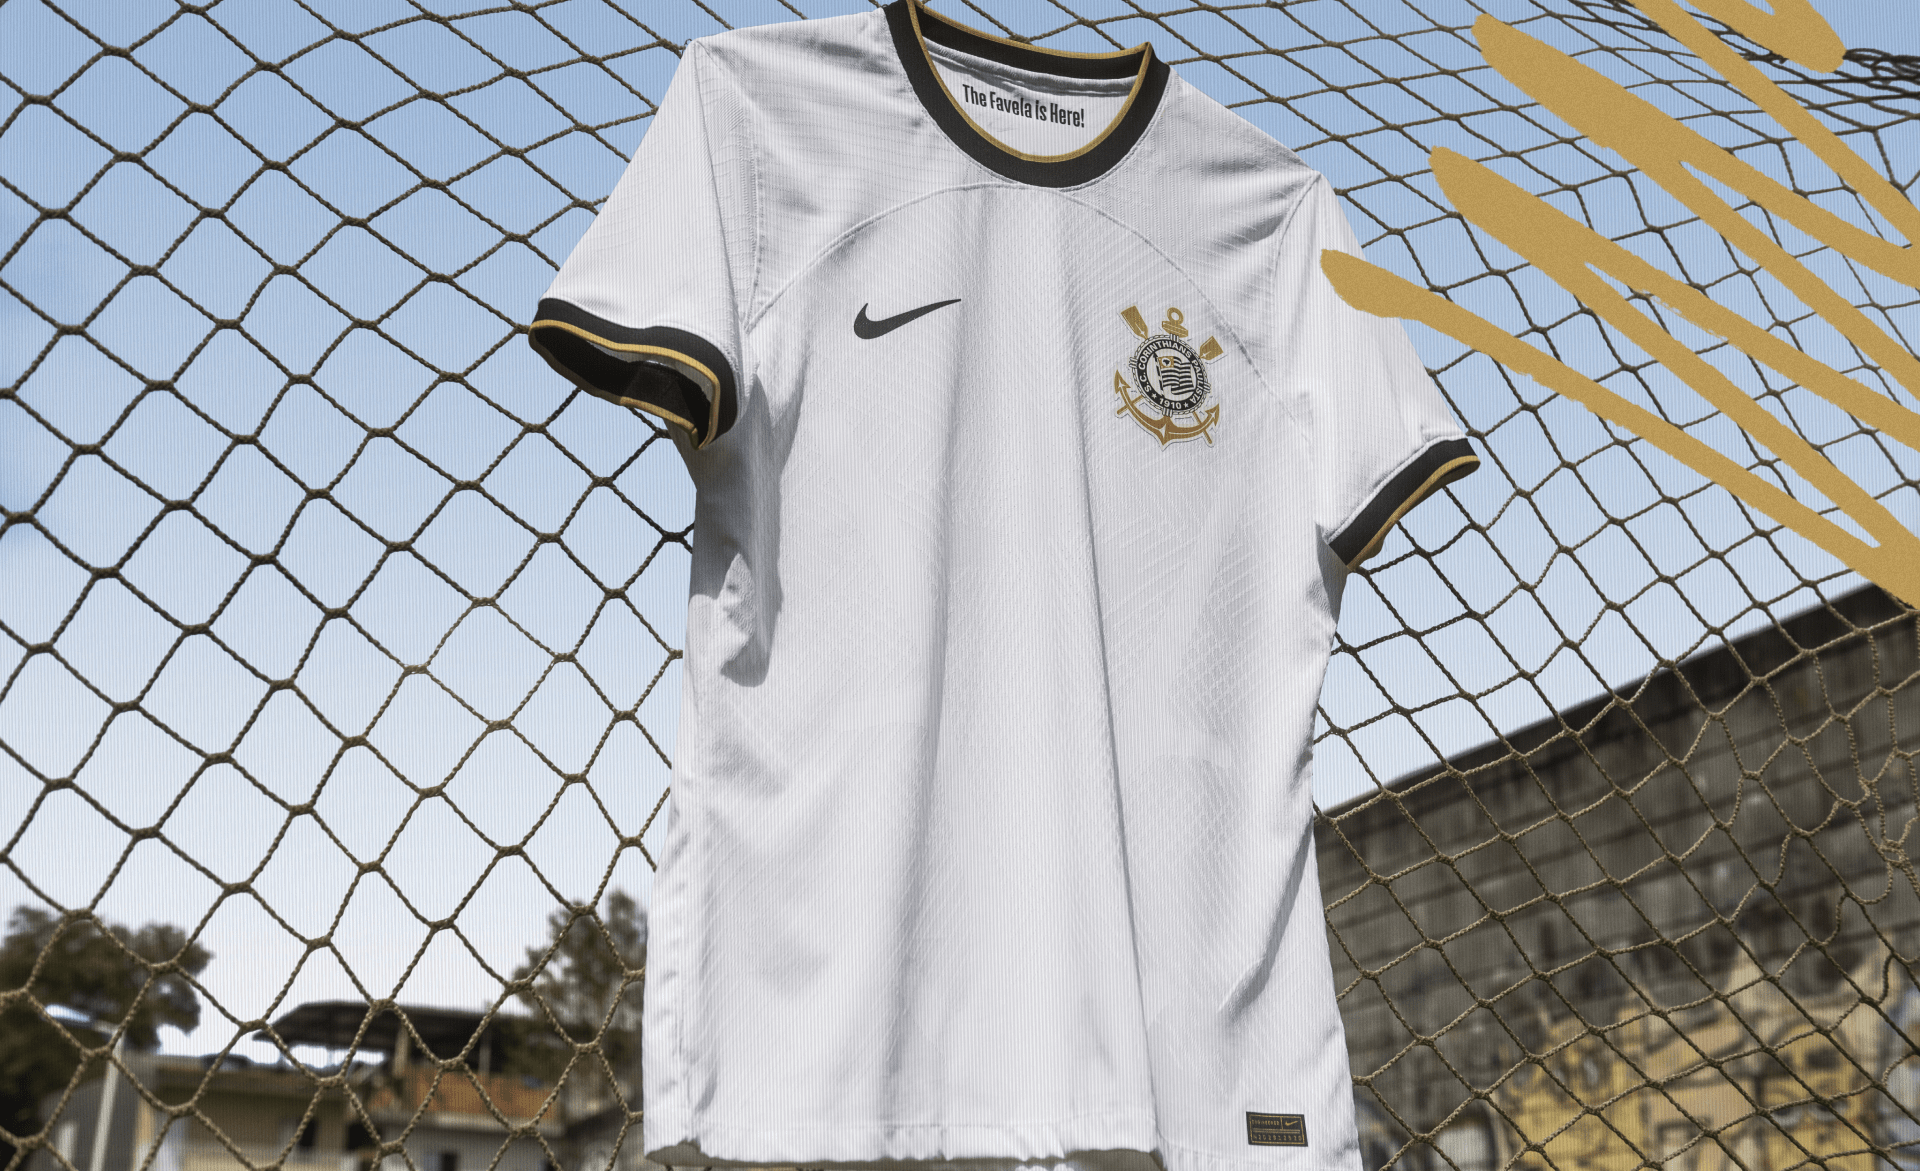 Nova camisa do Corinthians tem detalhes dourados em homenagem ao "ano de ouro" de 2012, quando o time venceu Libertadores e Mundial -